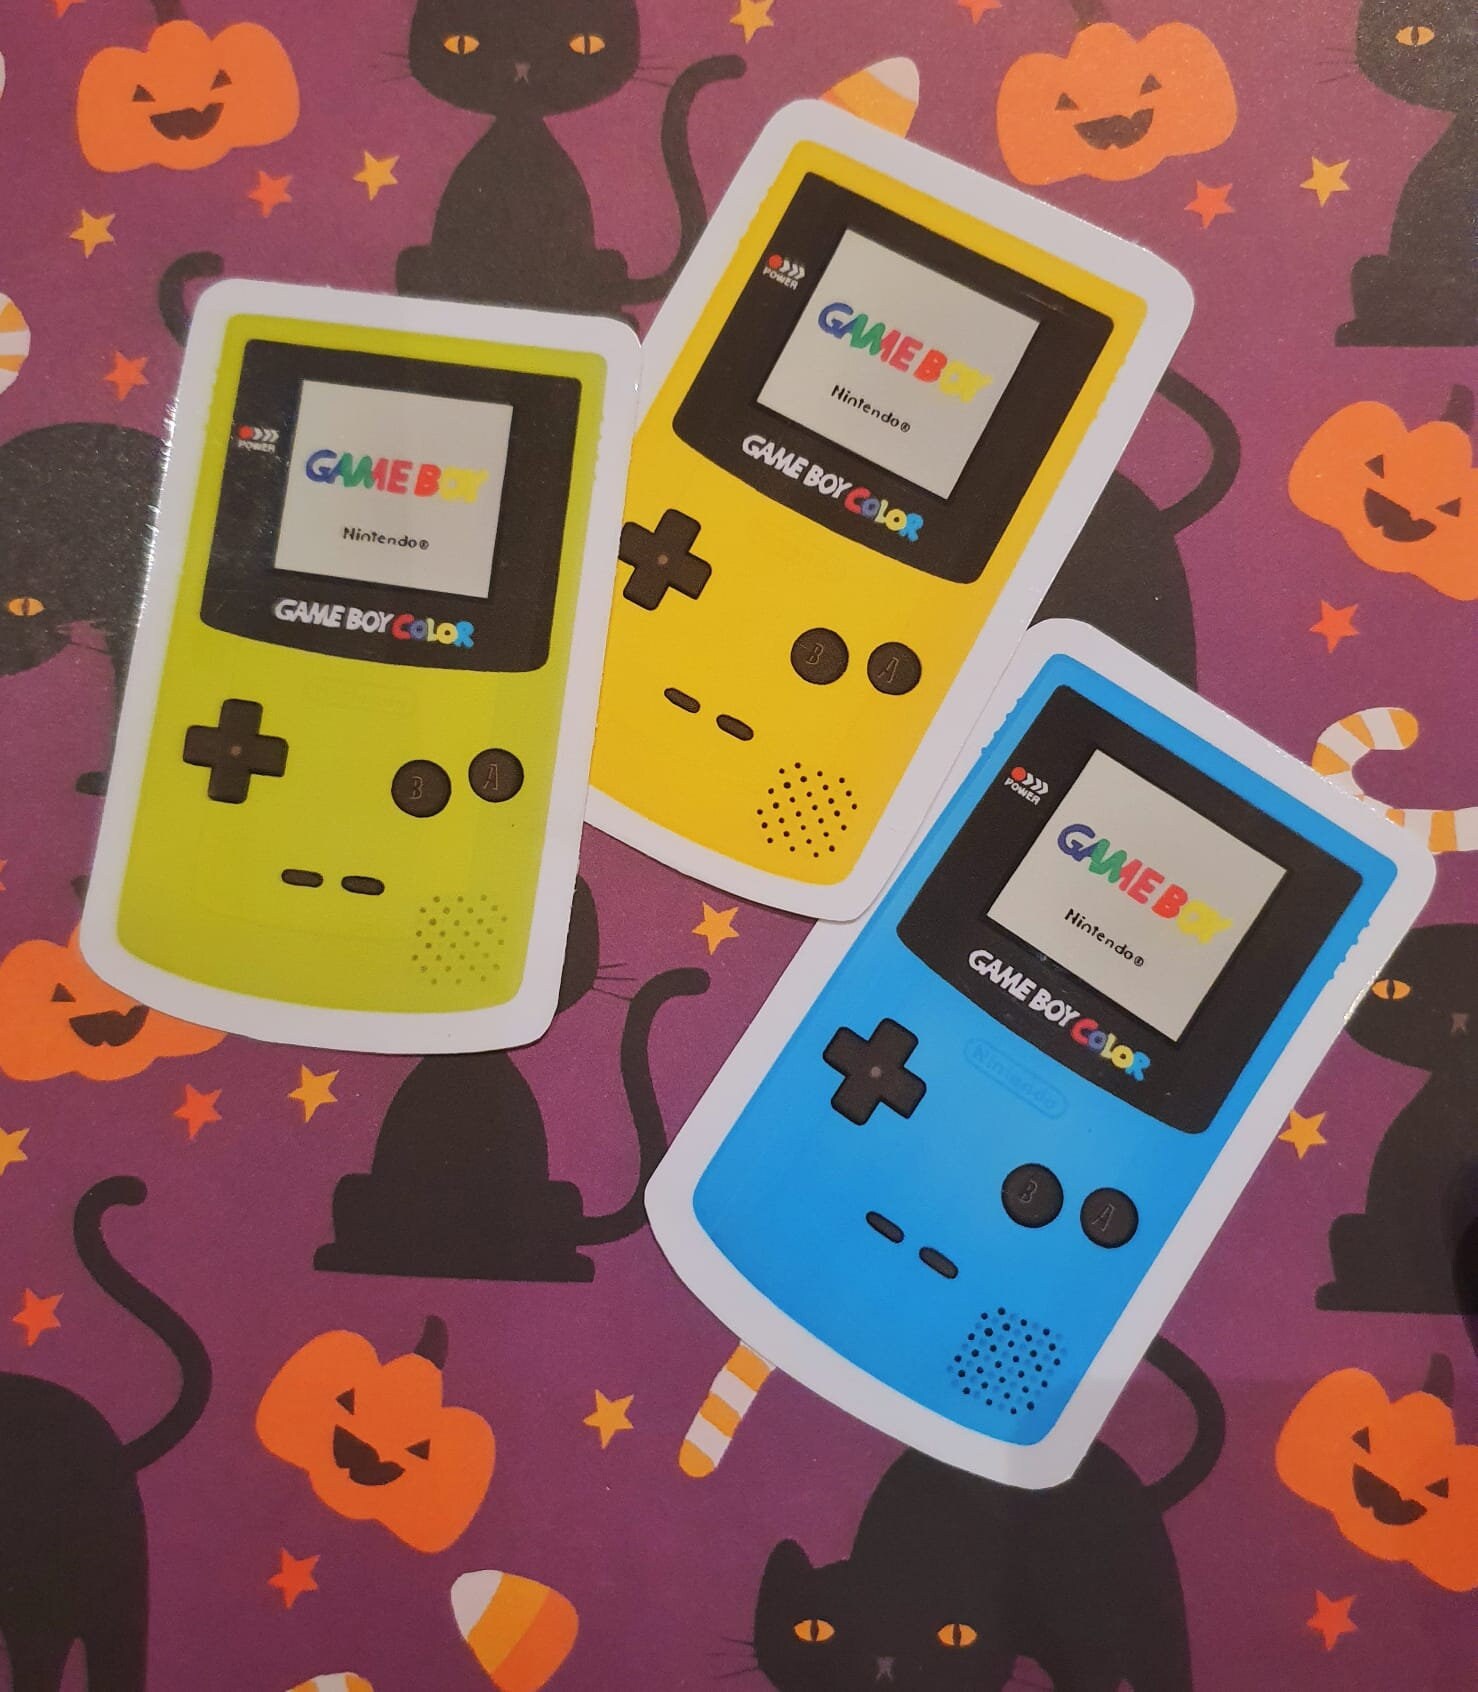 Game Boy Color, Game Boy / Pocket / Color, Assistance